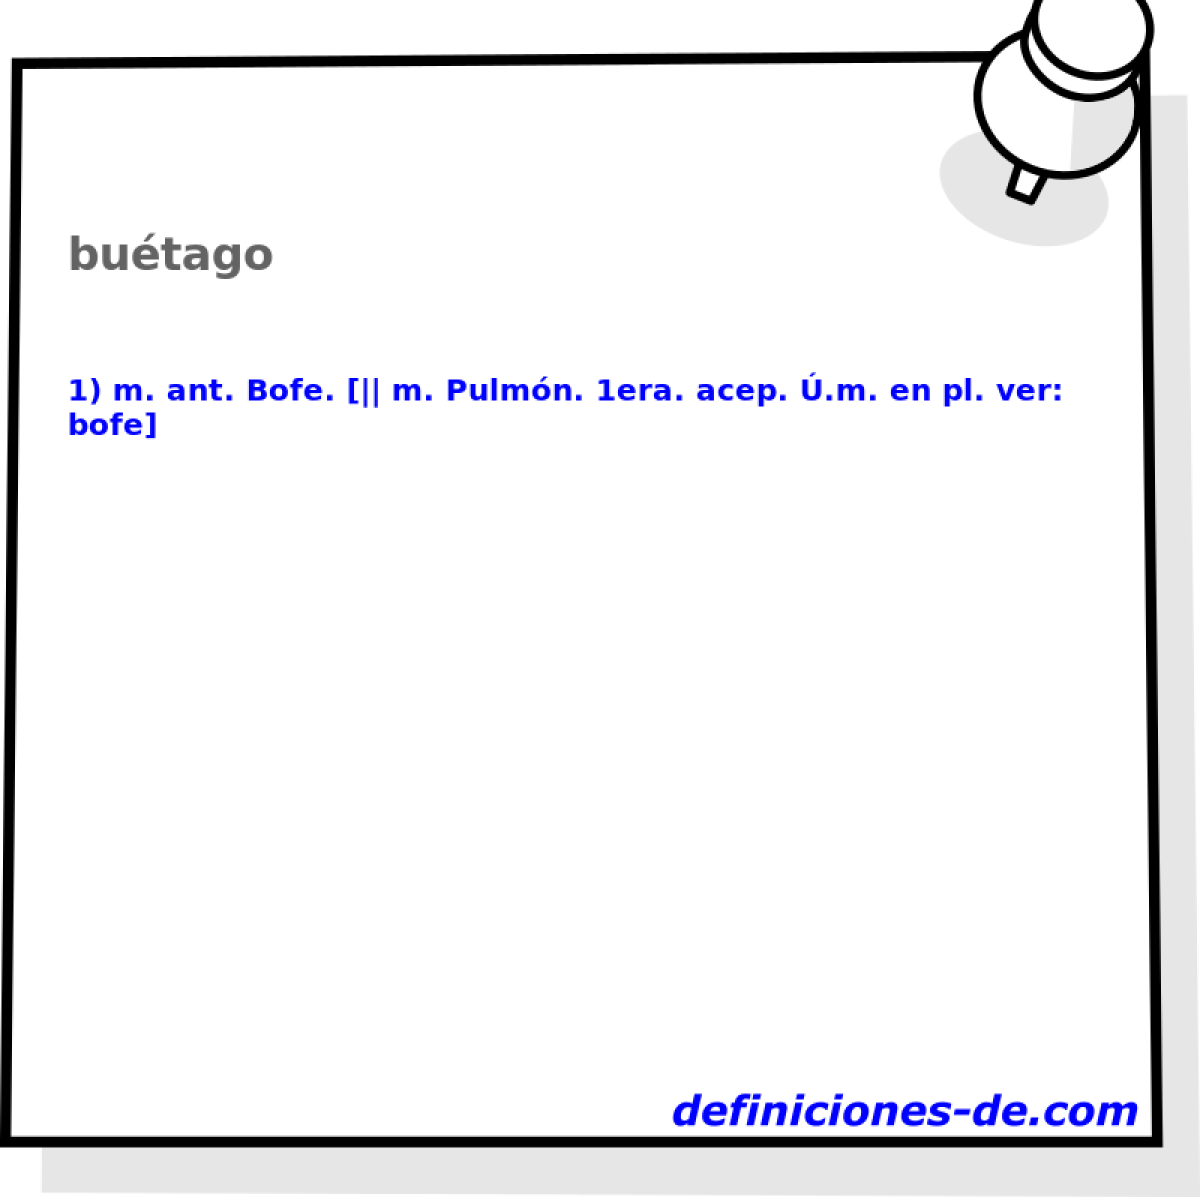 butago 